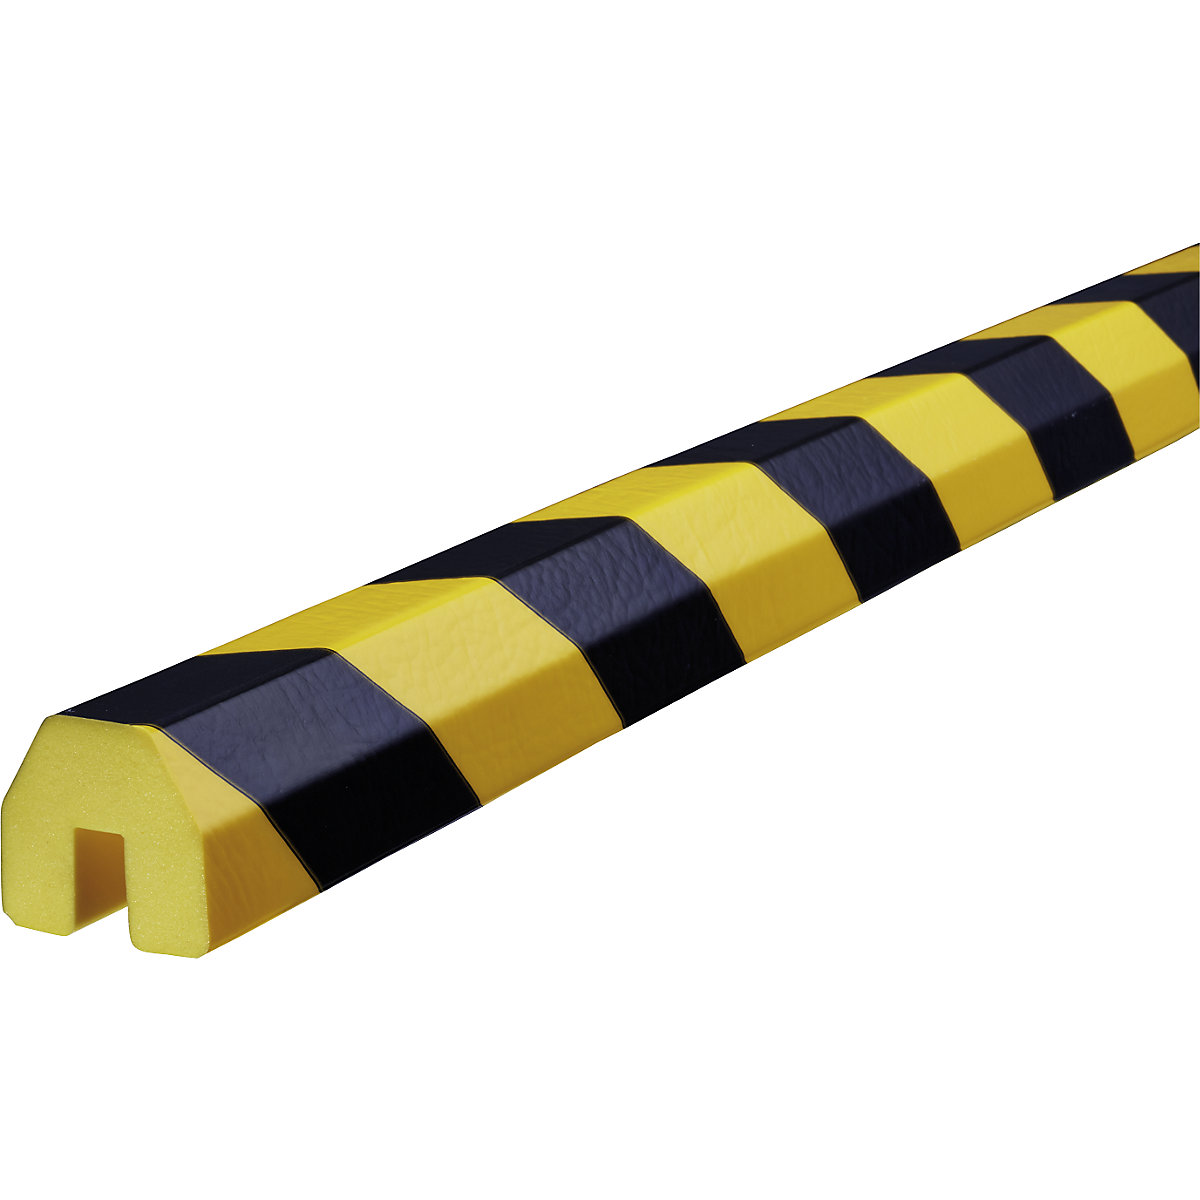 Knuffi® zaštitni profili – SHG, tip BB, 1 rola po 5 m, u crnoj / žutoj boji-20